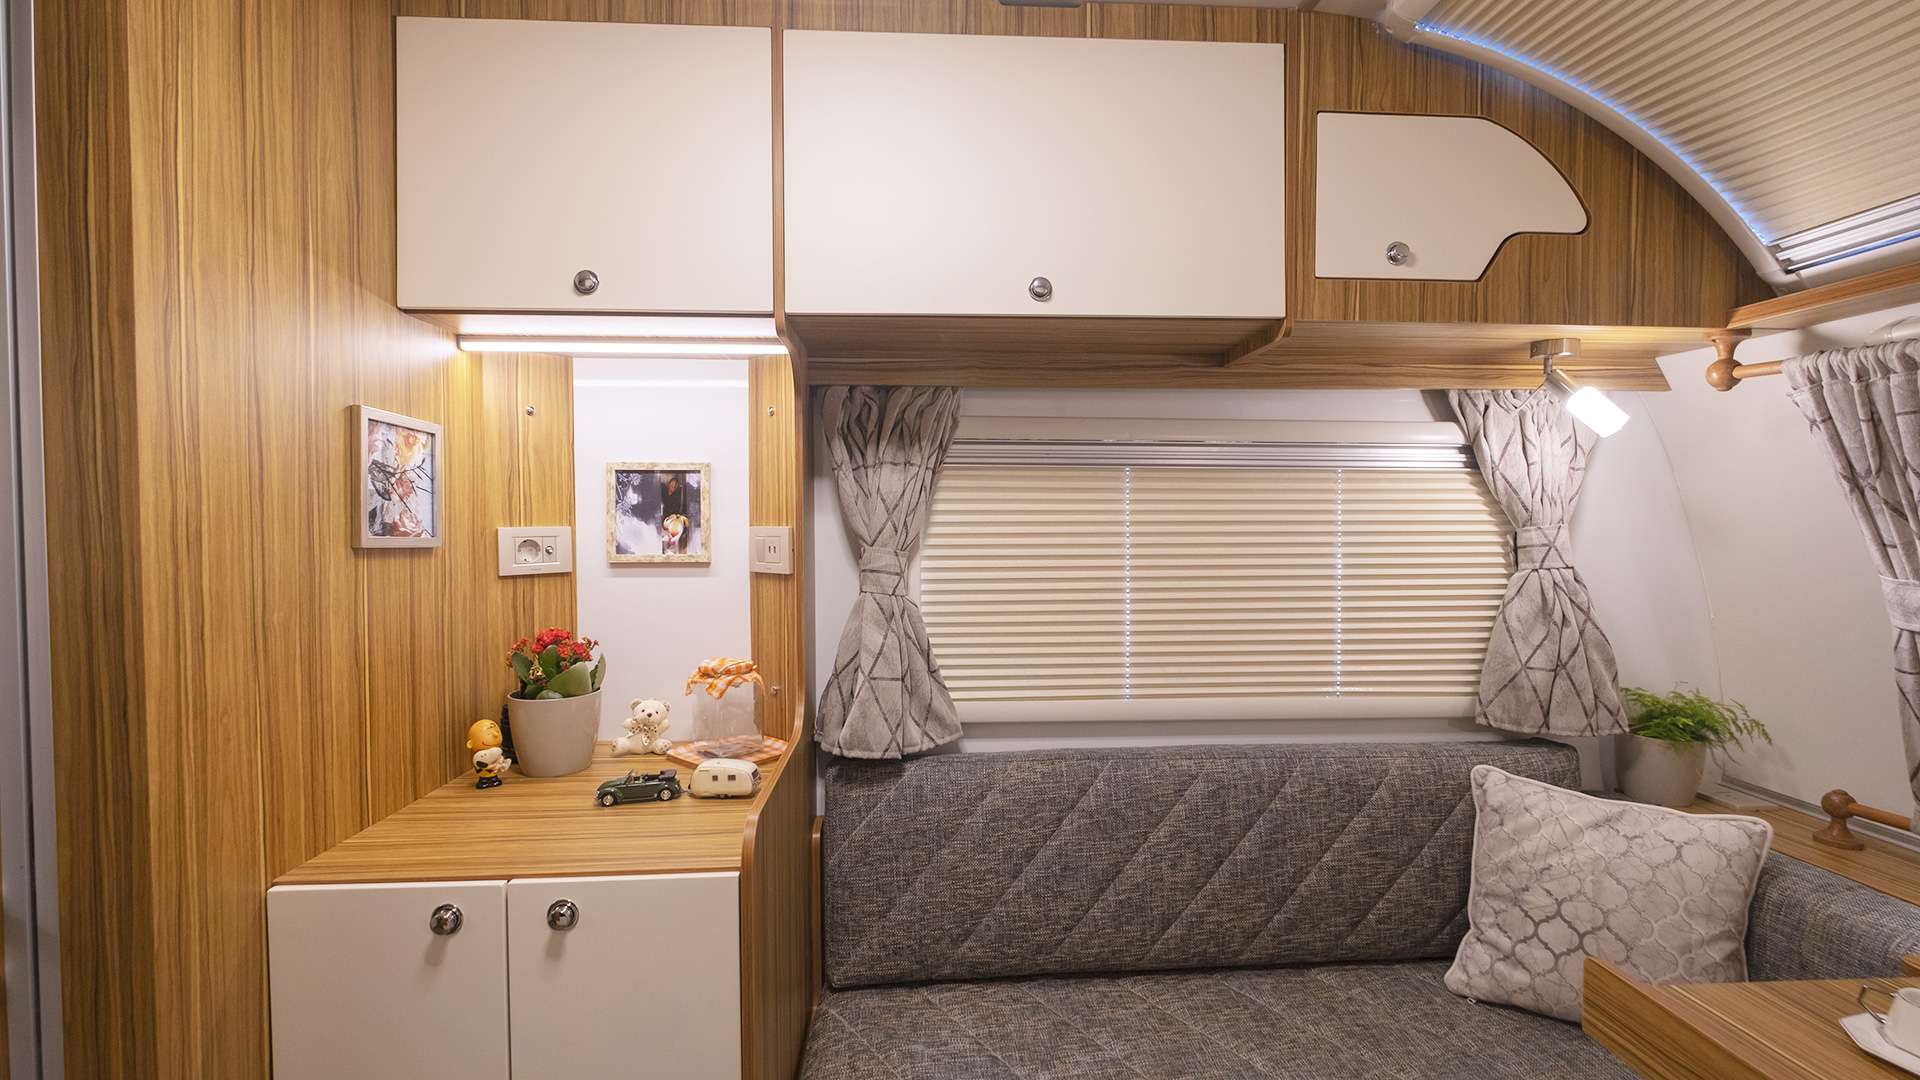 Swan Caravan Safir Model Interior Design